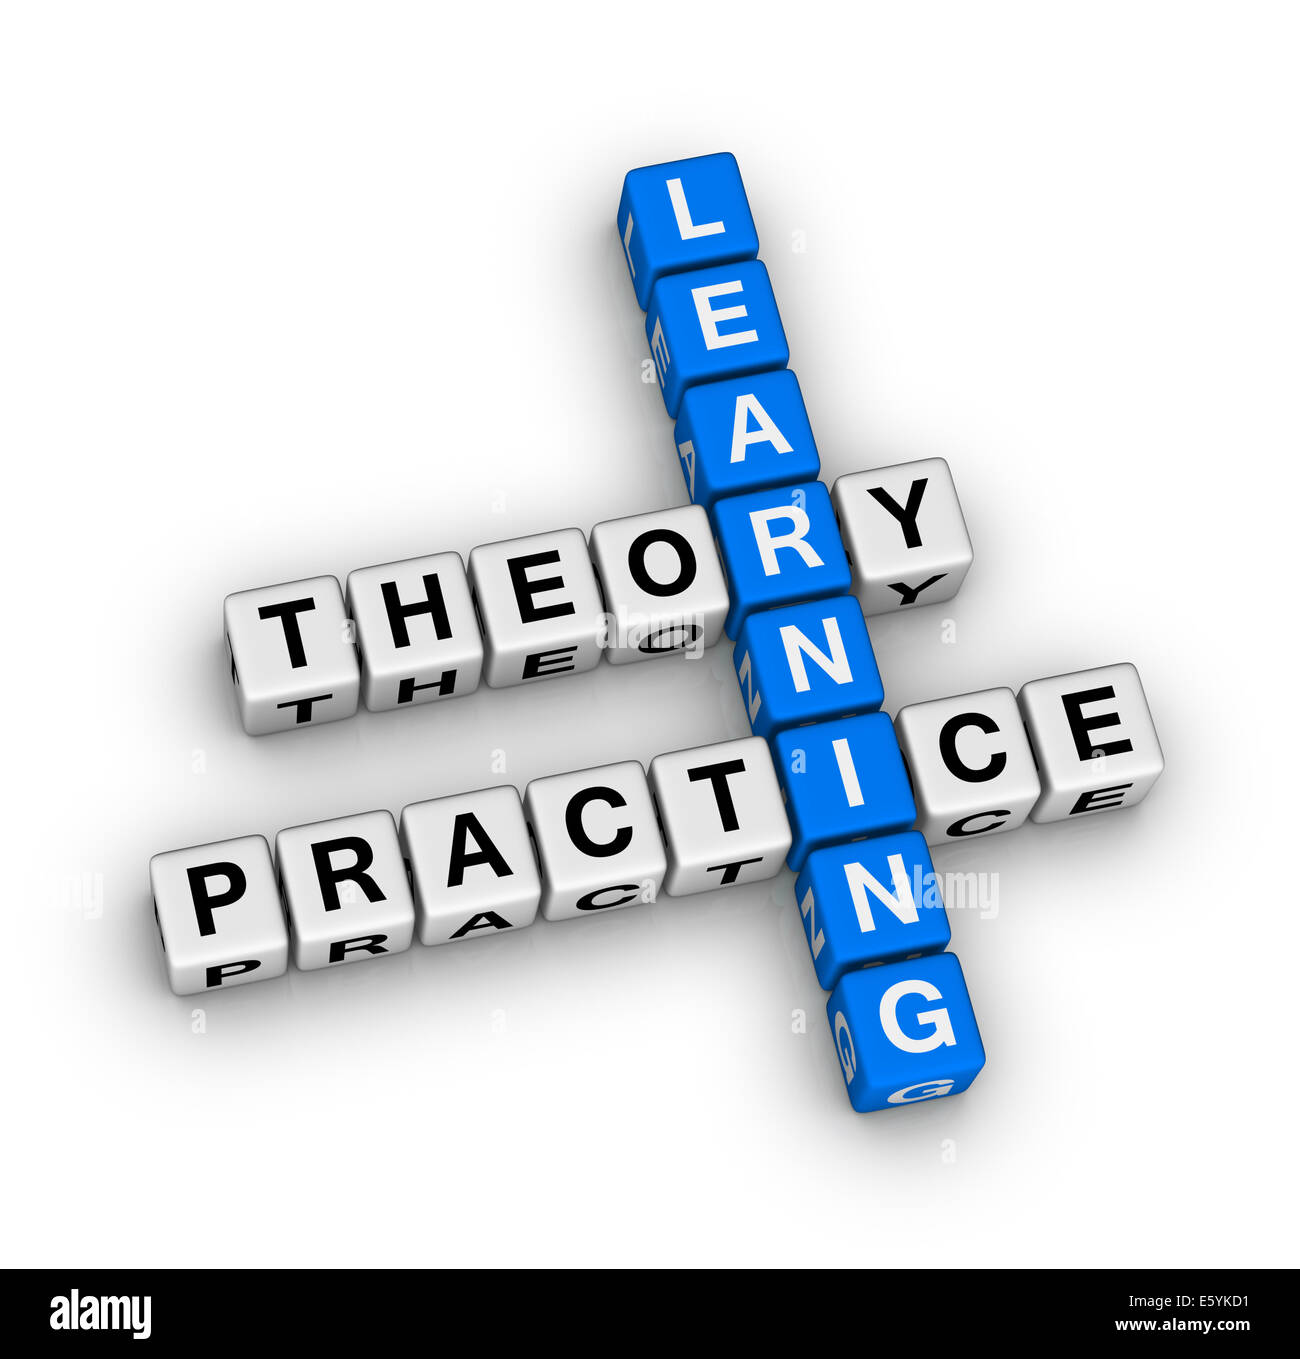 lernen - Theorie und Praxis Kreuzworträtsel Stockfoto